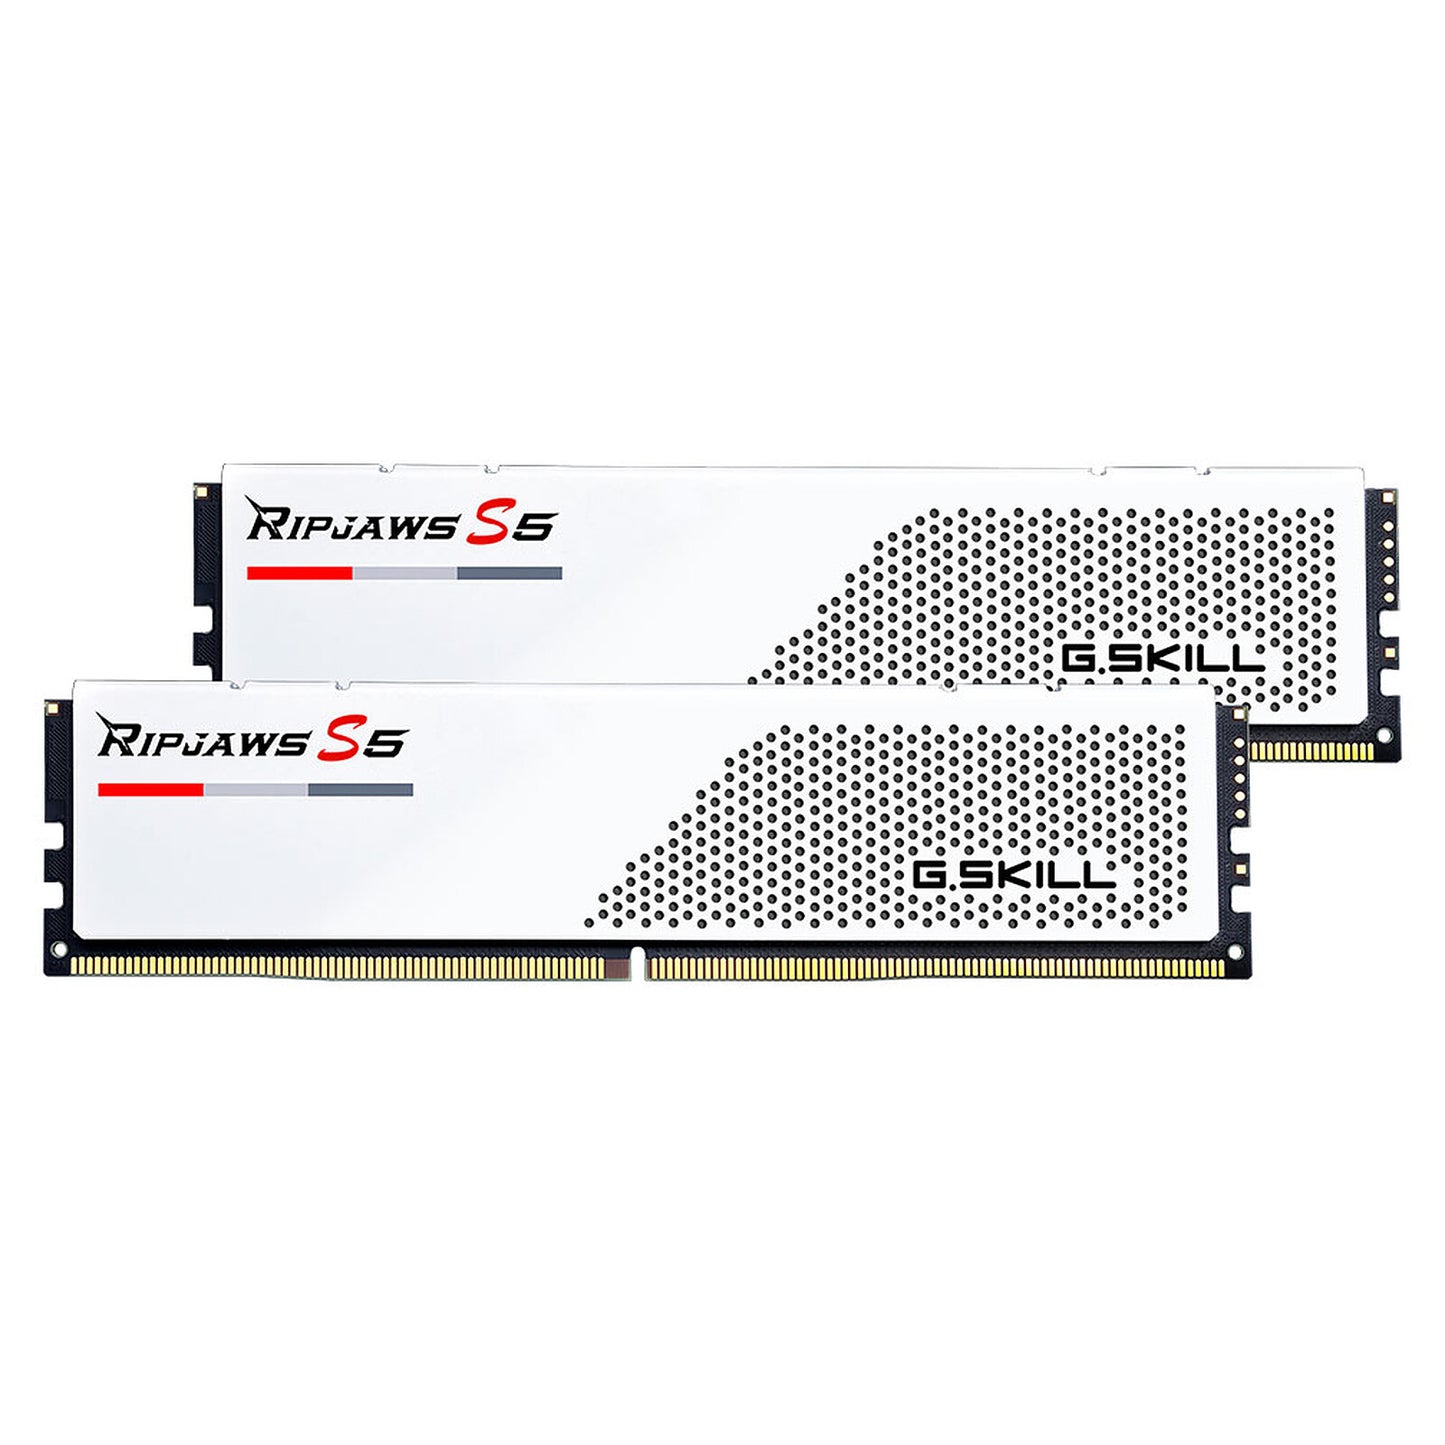 G.Skill Ripjaws X5 DDR5 記憶體系列